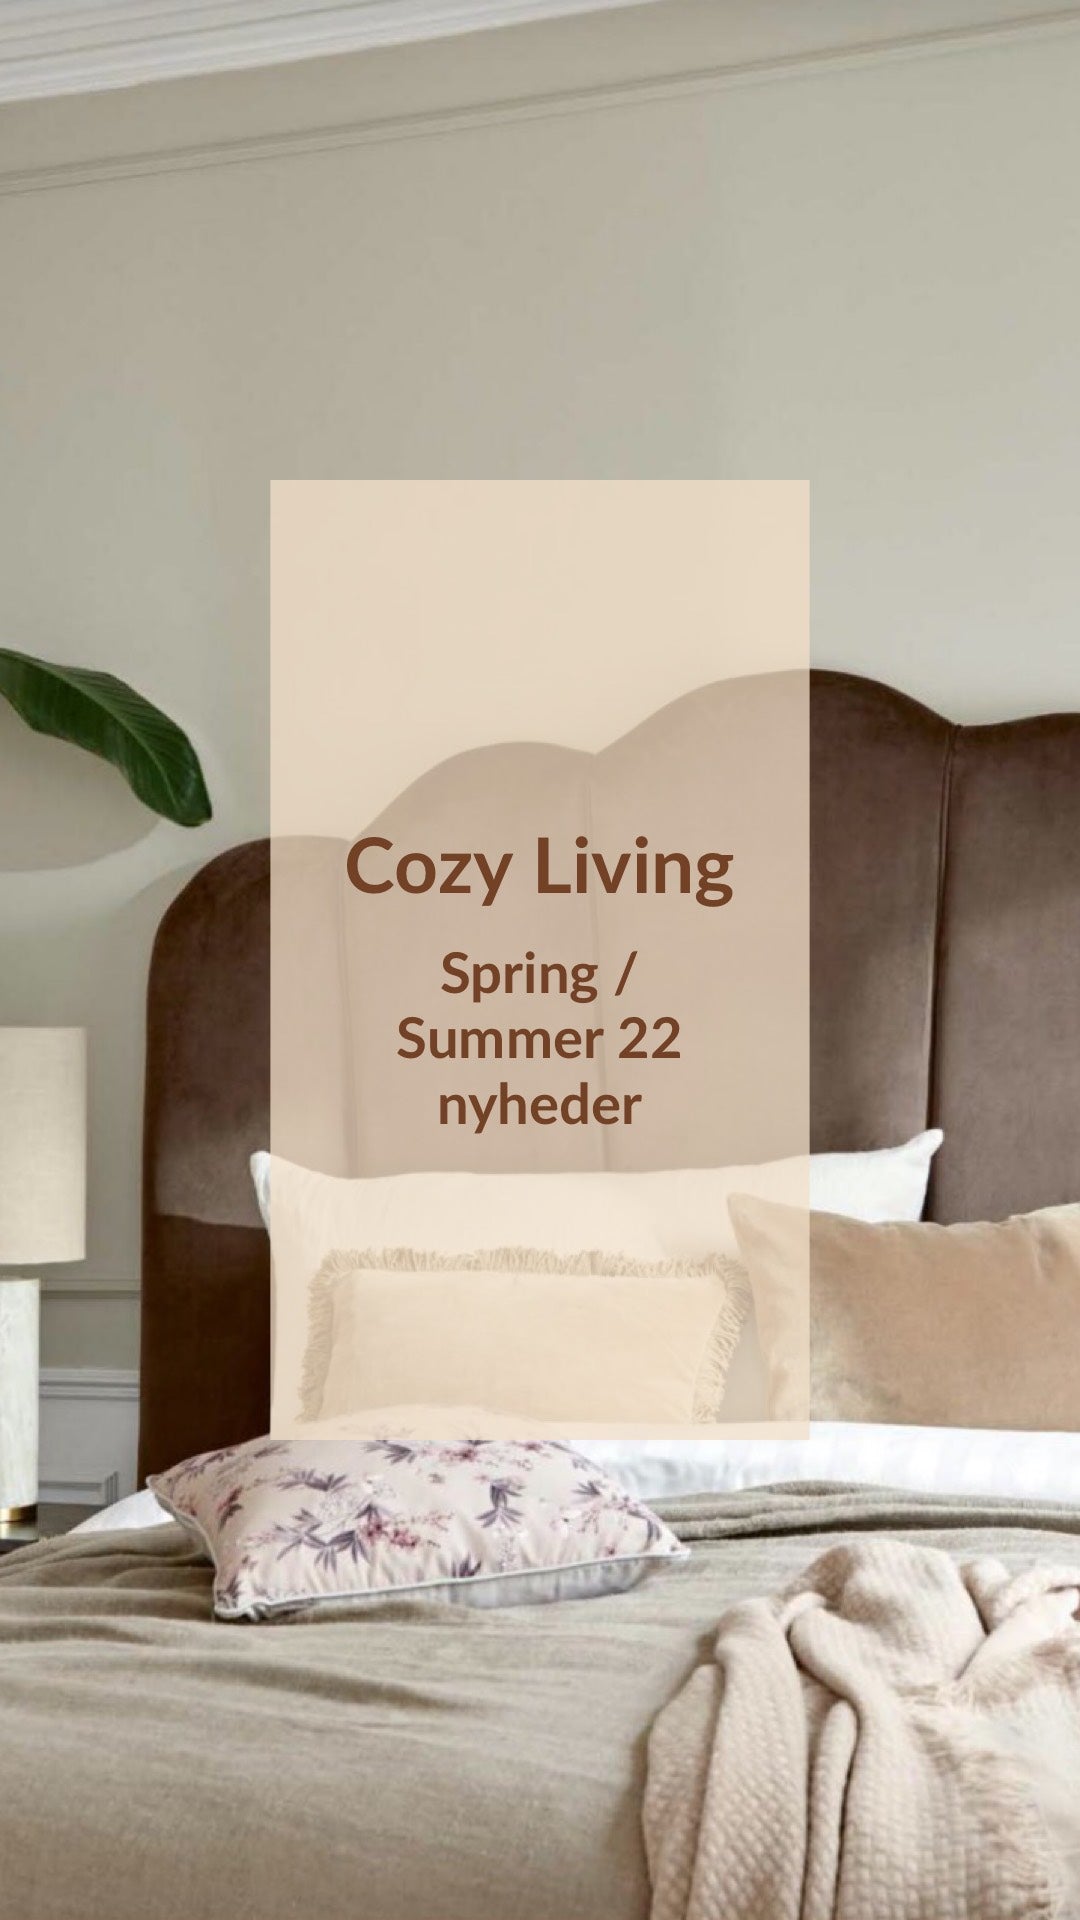 Cozy Living - Spring / Summer 22 nyheder